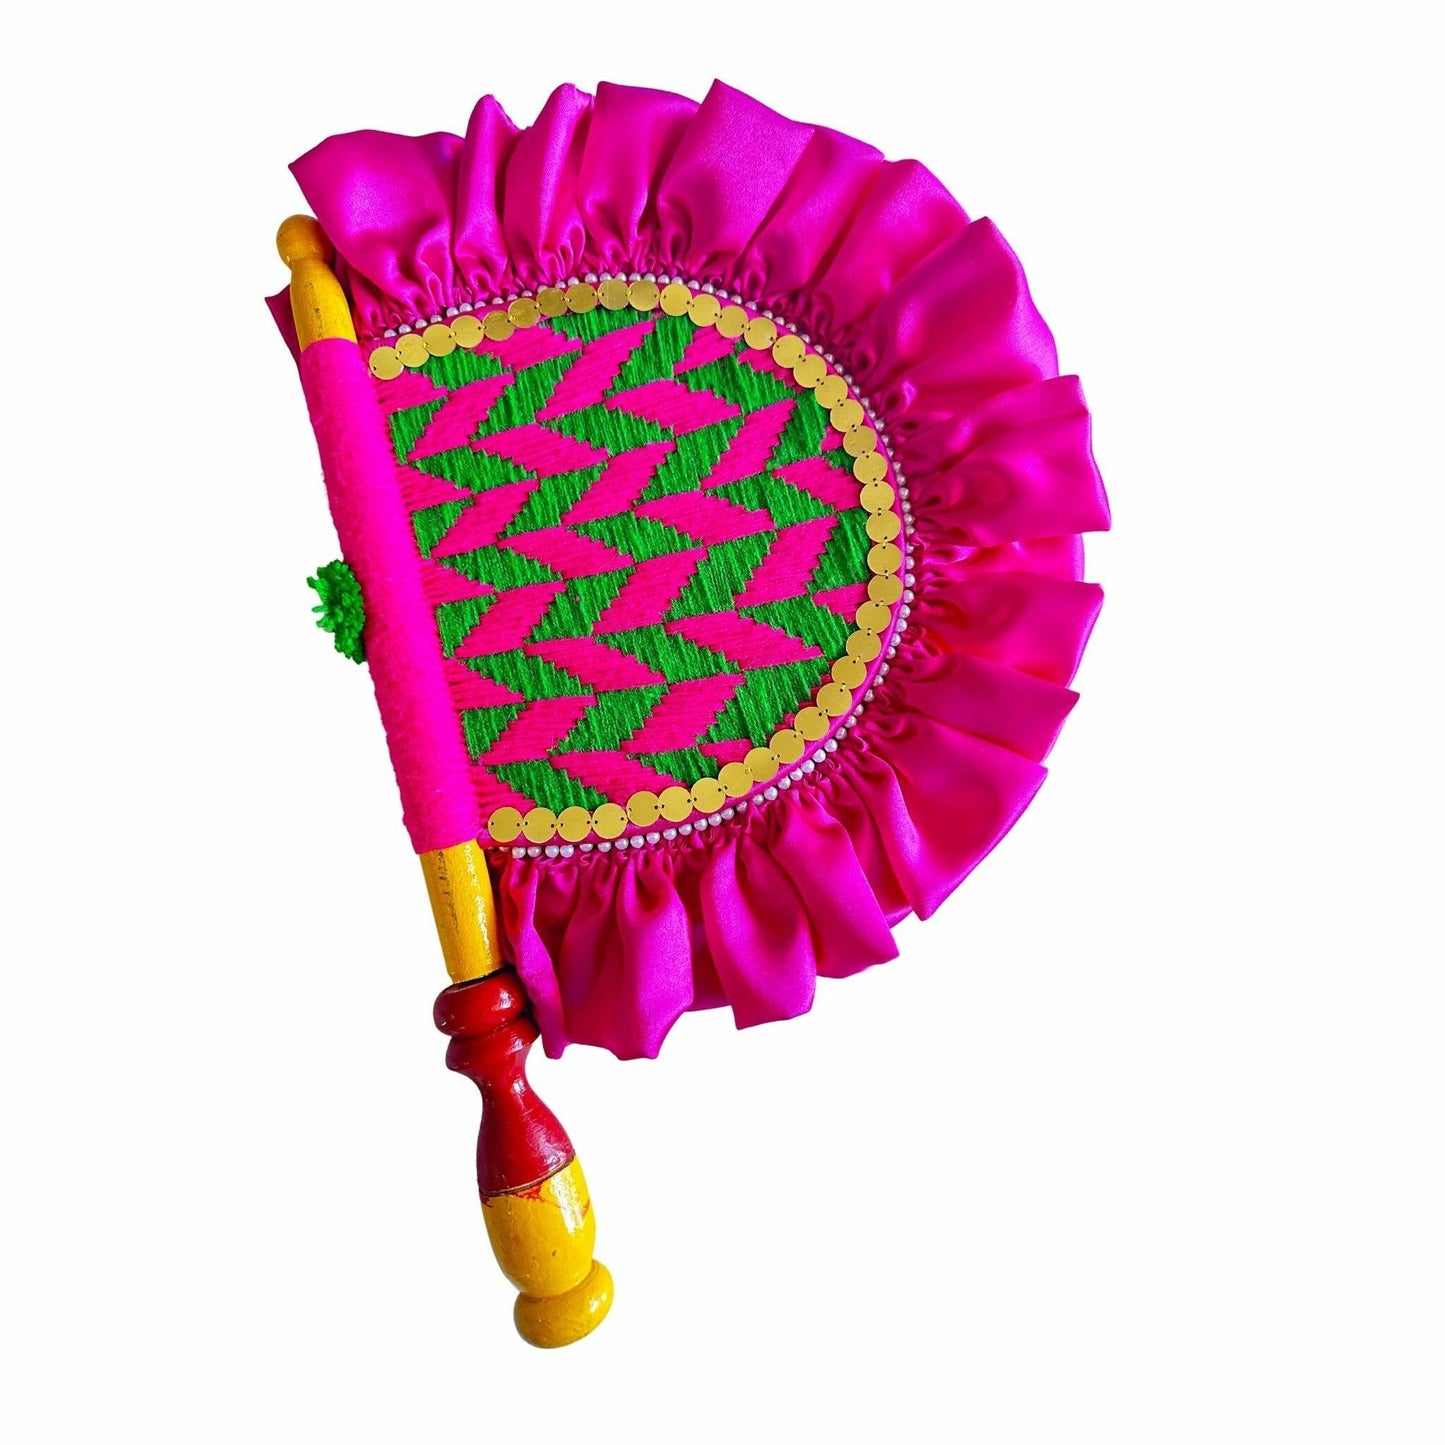 Pakhi / Handfan - Punjabi Cultural Item